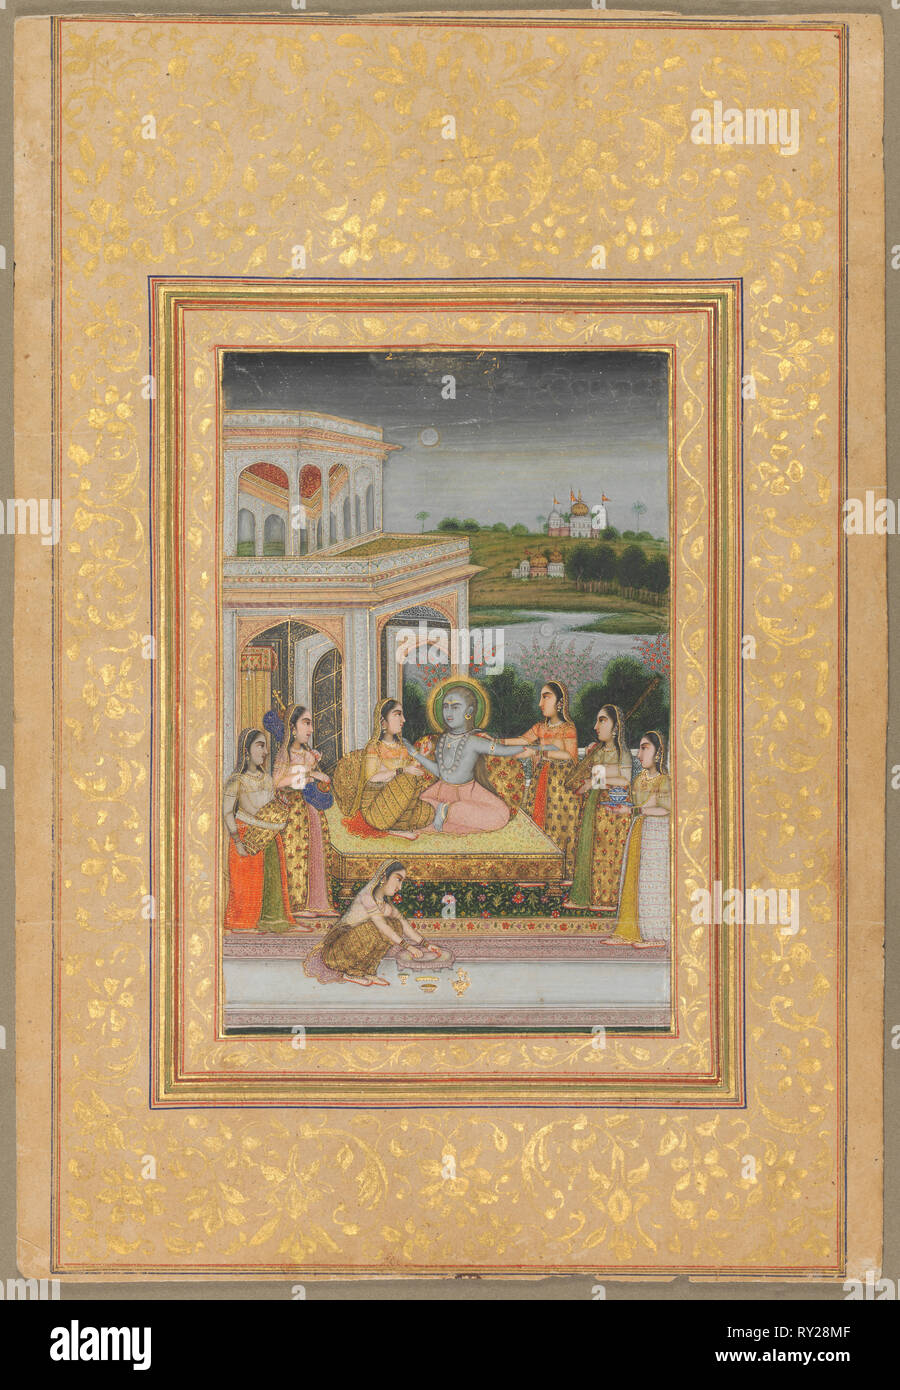 Bhairava Raga, début des années 1800. L'Inde, au début du xixe siècle. Couleur sur papier ; image : 18,7 x 12,5 cm (7 3/8 x 4 15/16 in.) ; total : 35,6 x 22 cm (14 x 8 11/16 in Banque D'Images